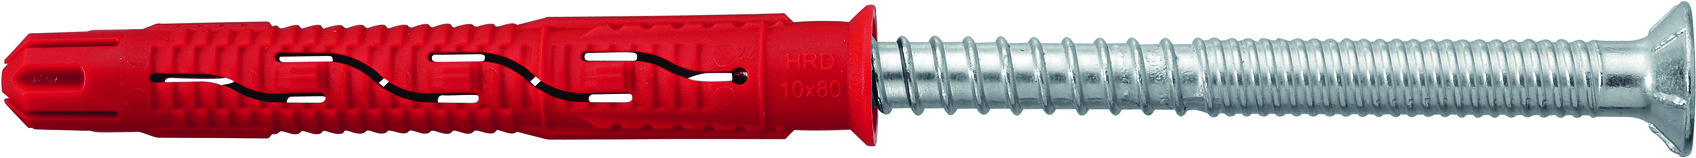 HILTI HDR-C 10x80